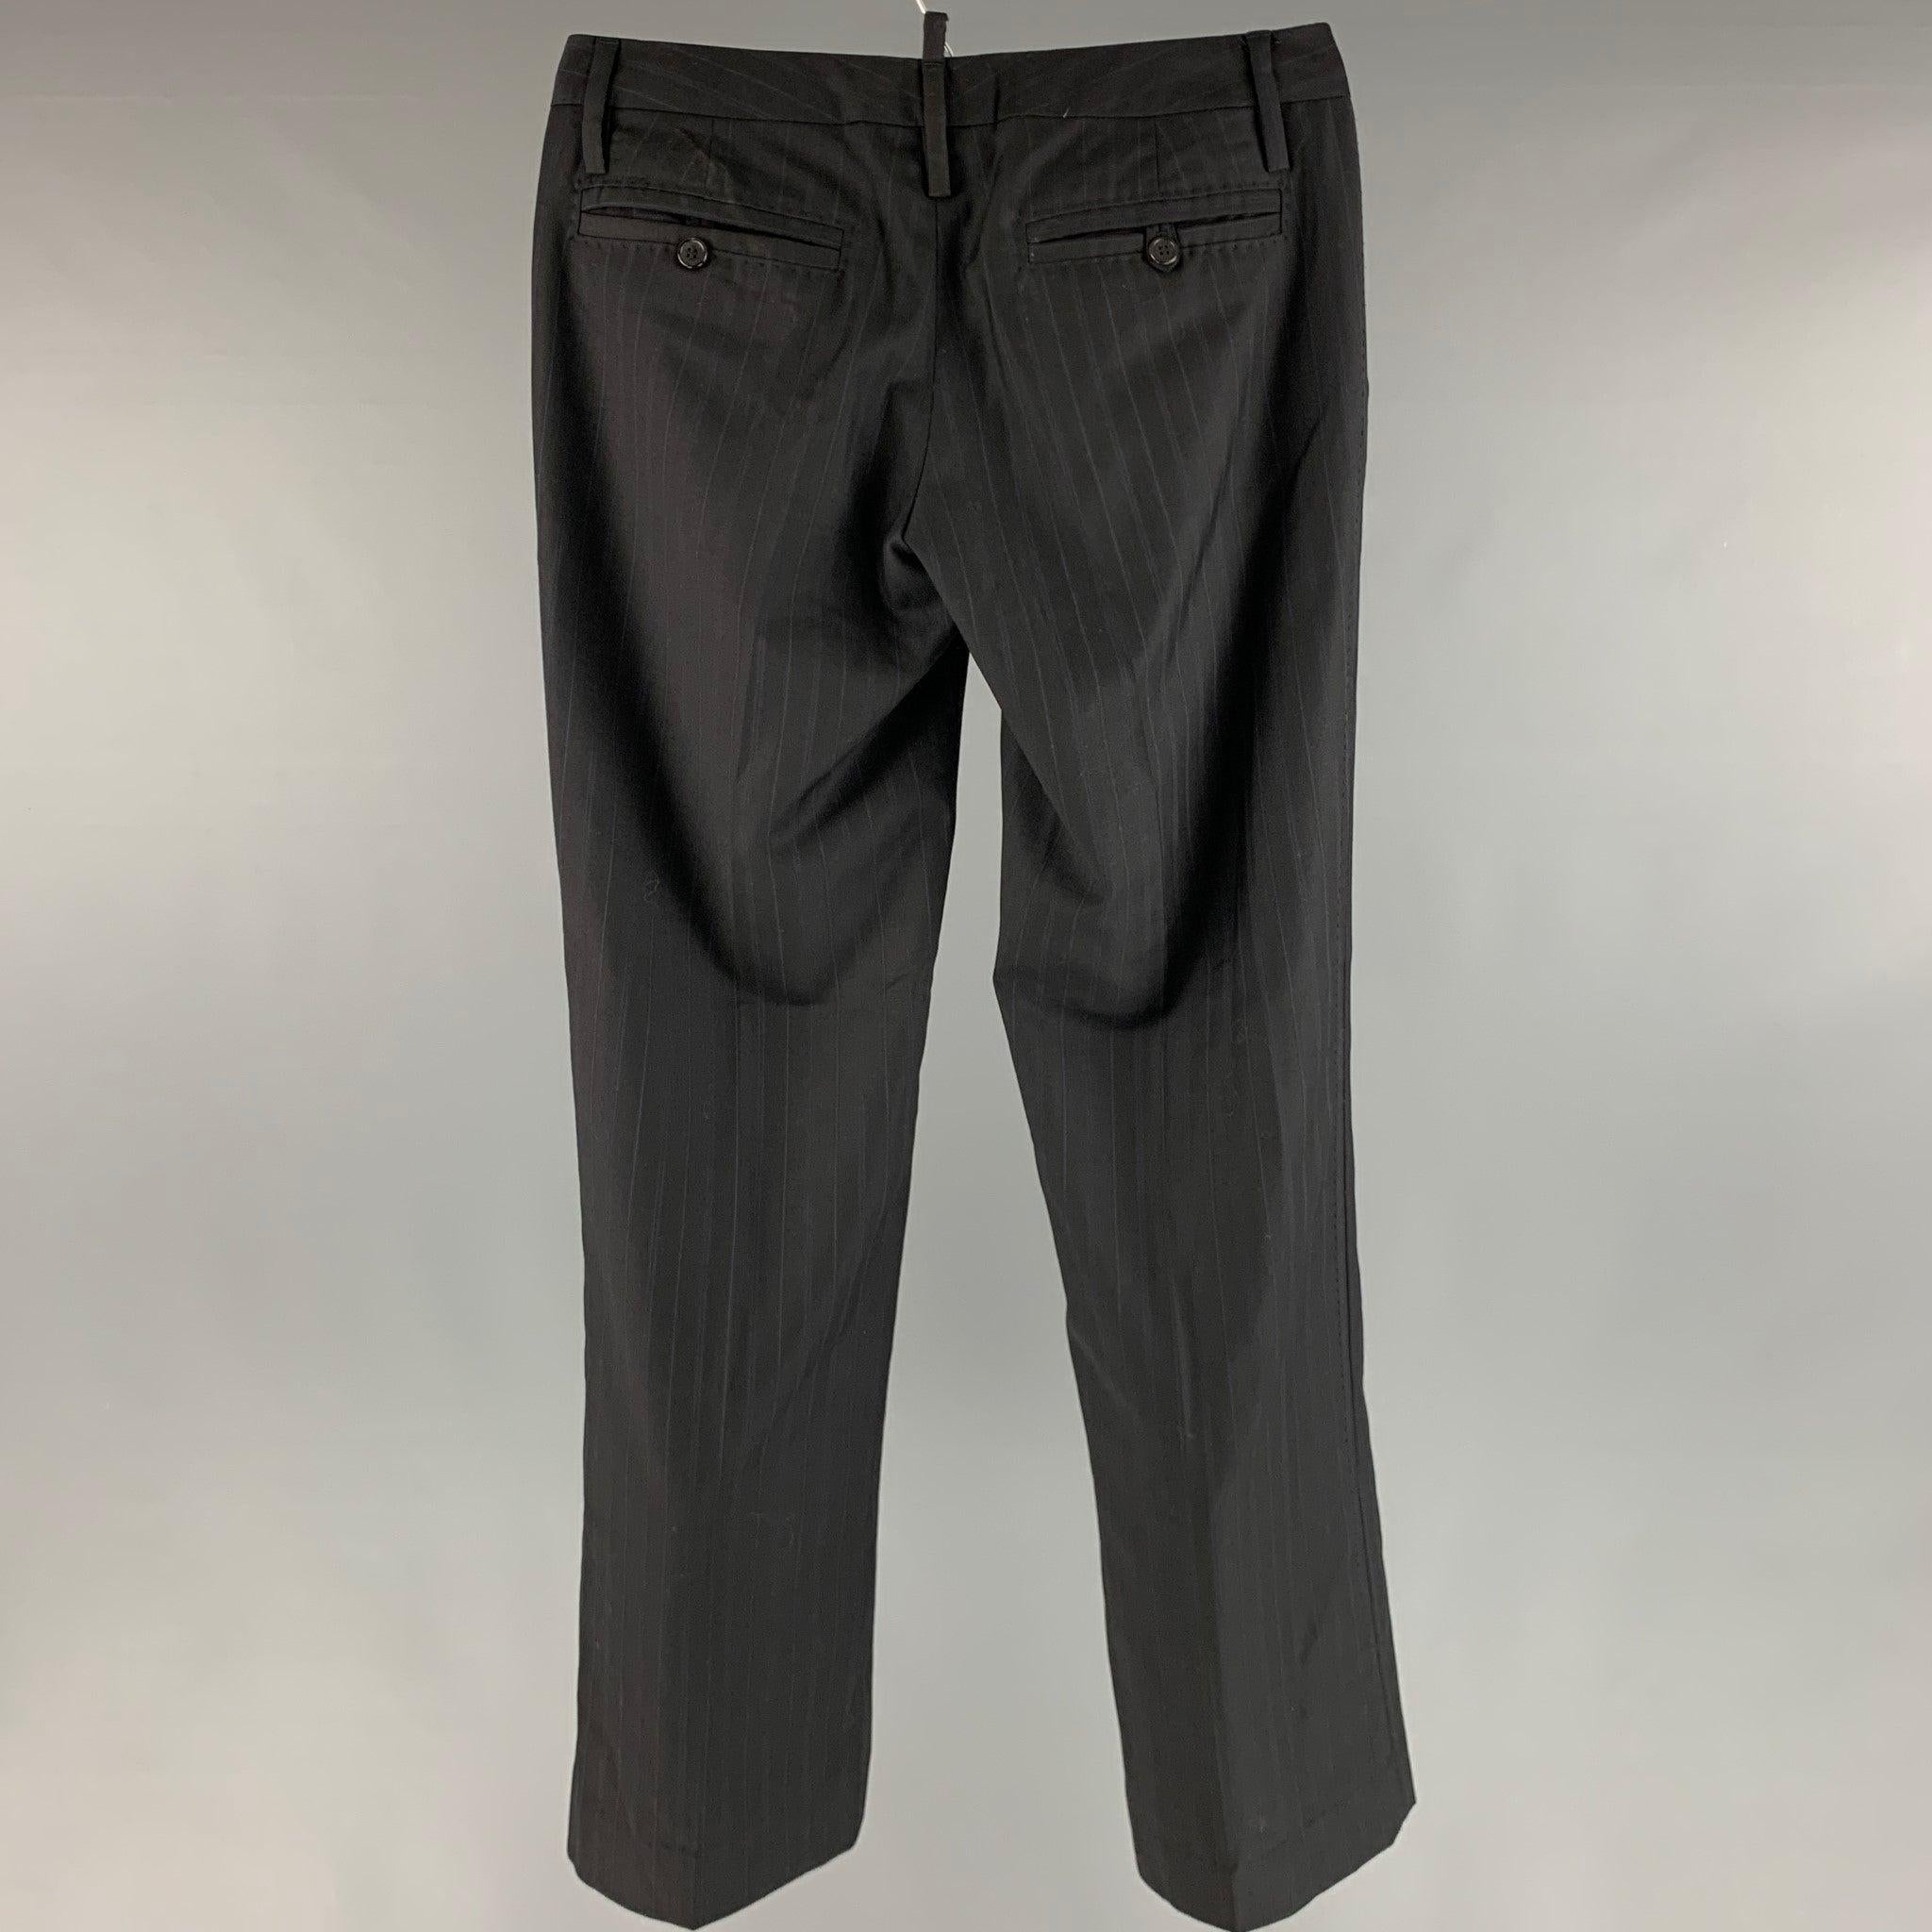 Le pantalon habillé DSQUARED2 se compose d'une étoffe tissée en laine rayée noire et marine, d'une taille basse et d'une fermeture zippée à la braguette. Fabriqué en Italie. Très bon état. 

Marqué :  6 

Mesures : 
 Taille : 32 pouces Hausse : 5.5